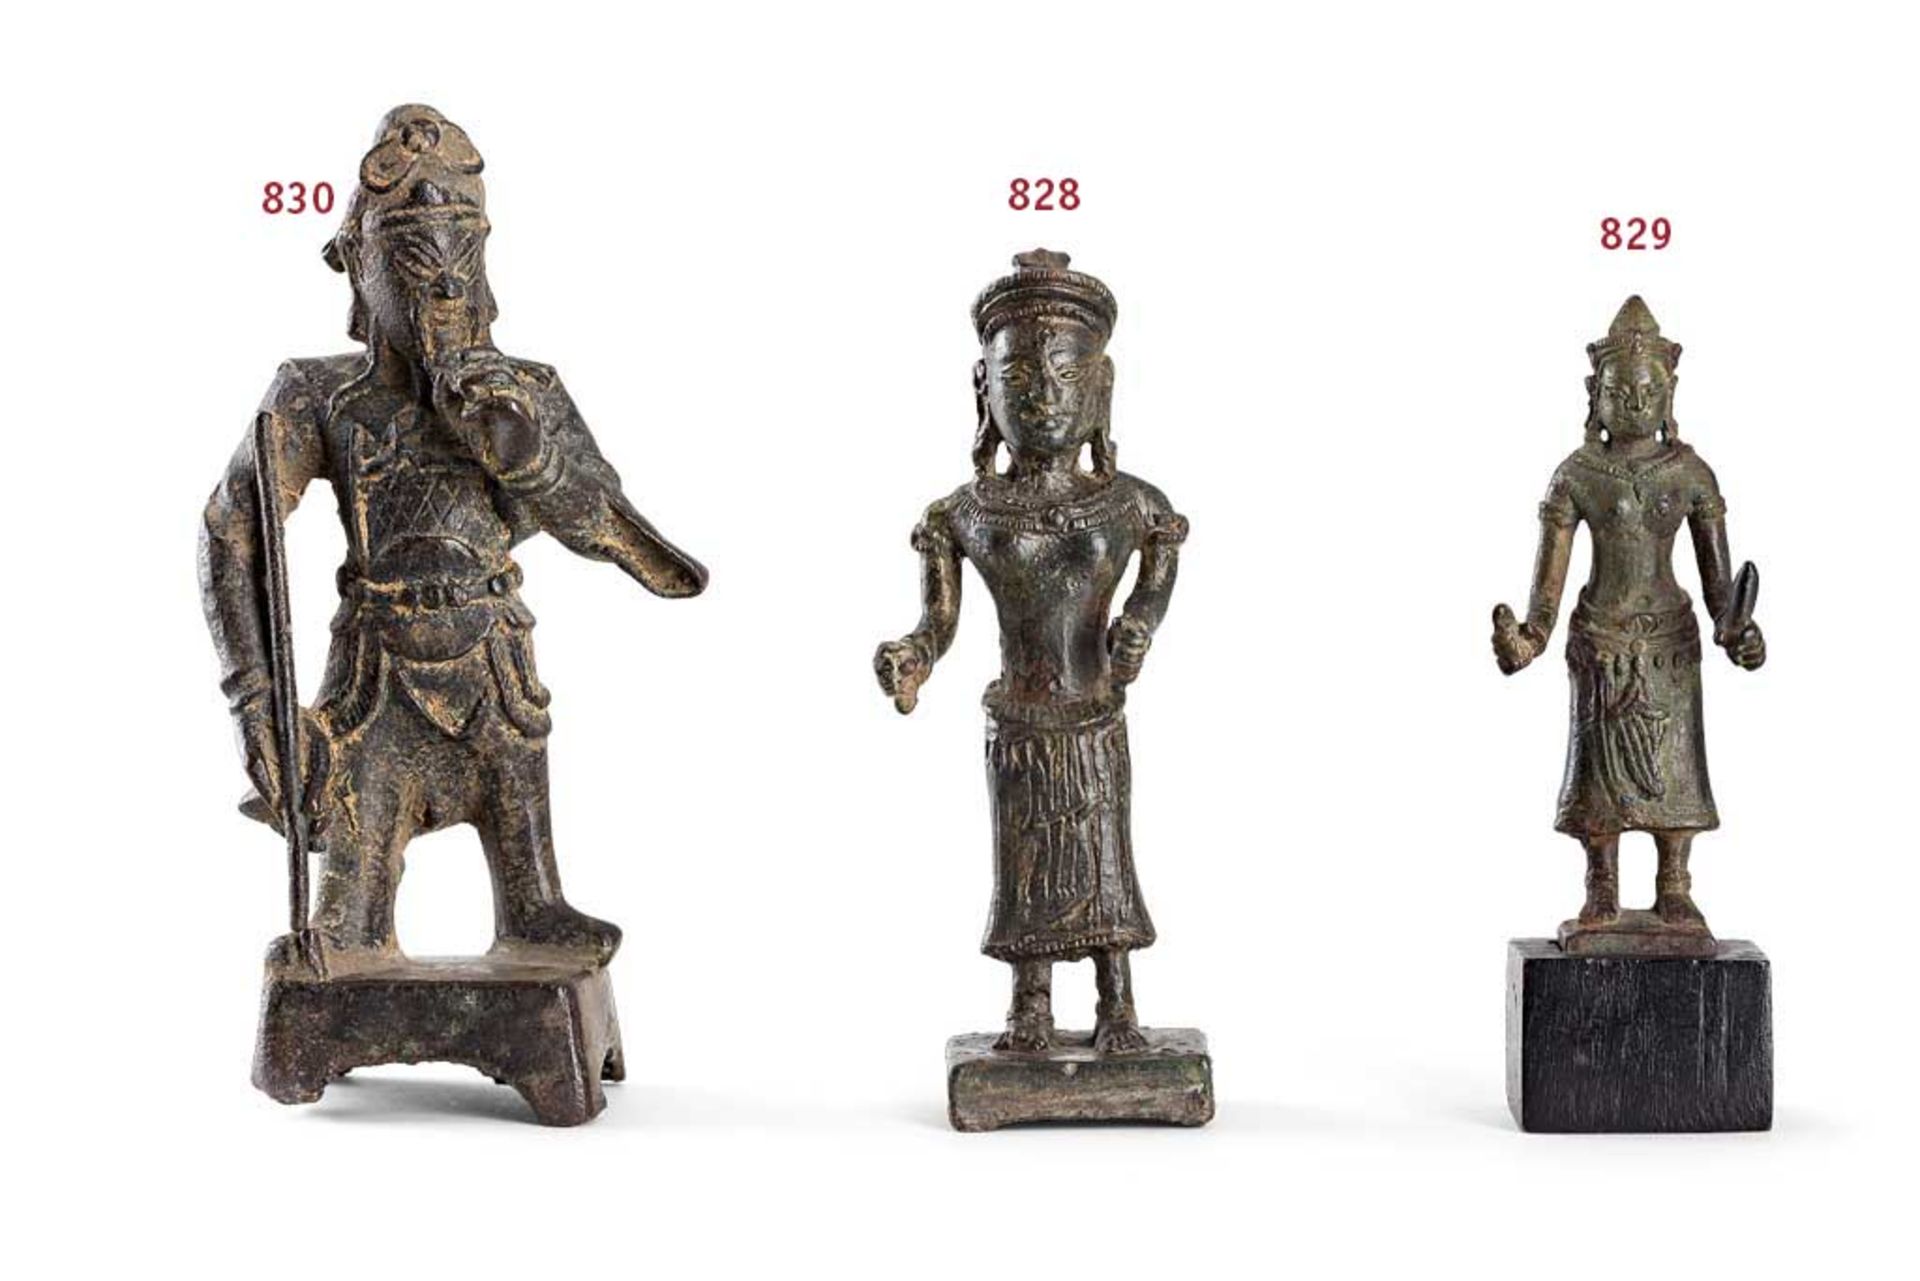 Guandi. Auf Plinthensockel stehender General. Bronze. H 12,5 cm. China, späte Ming-Zeit (?), 17.